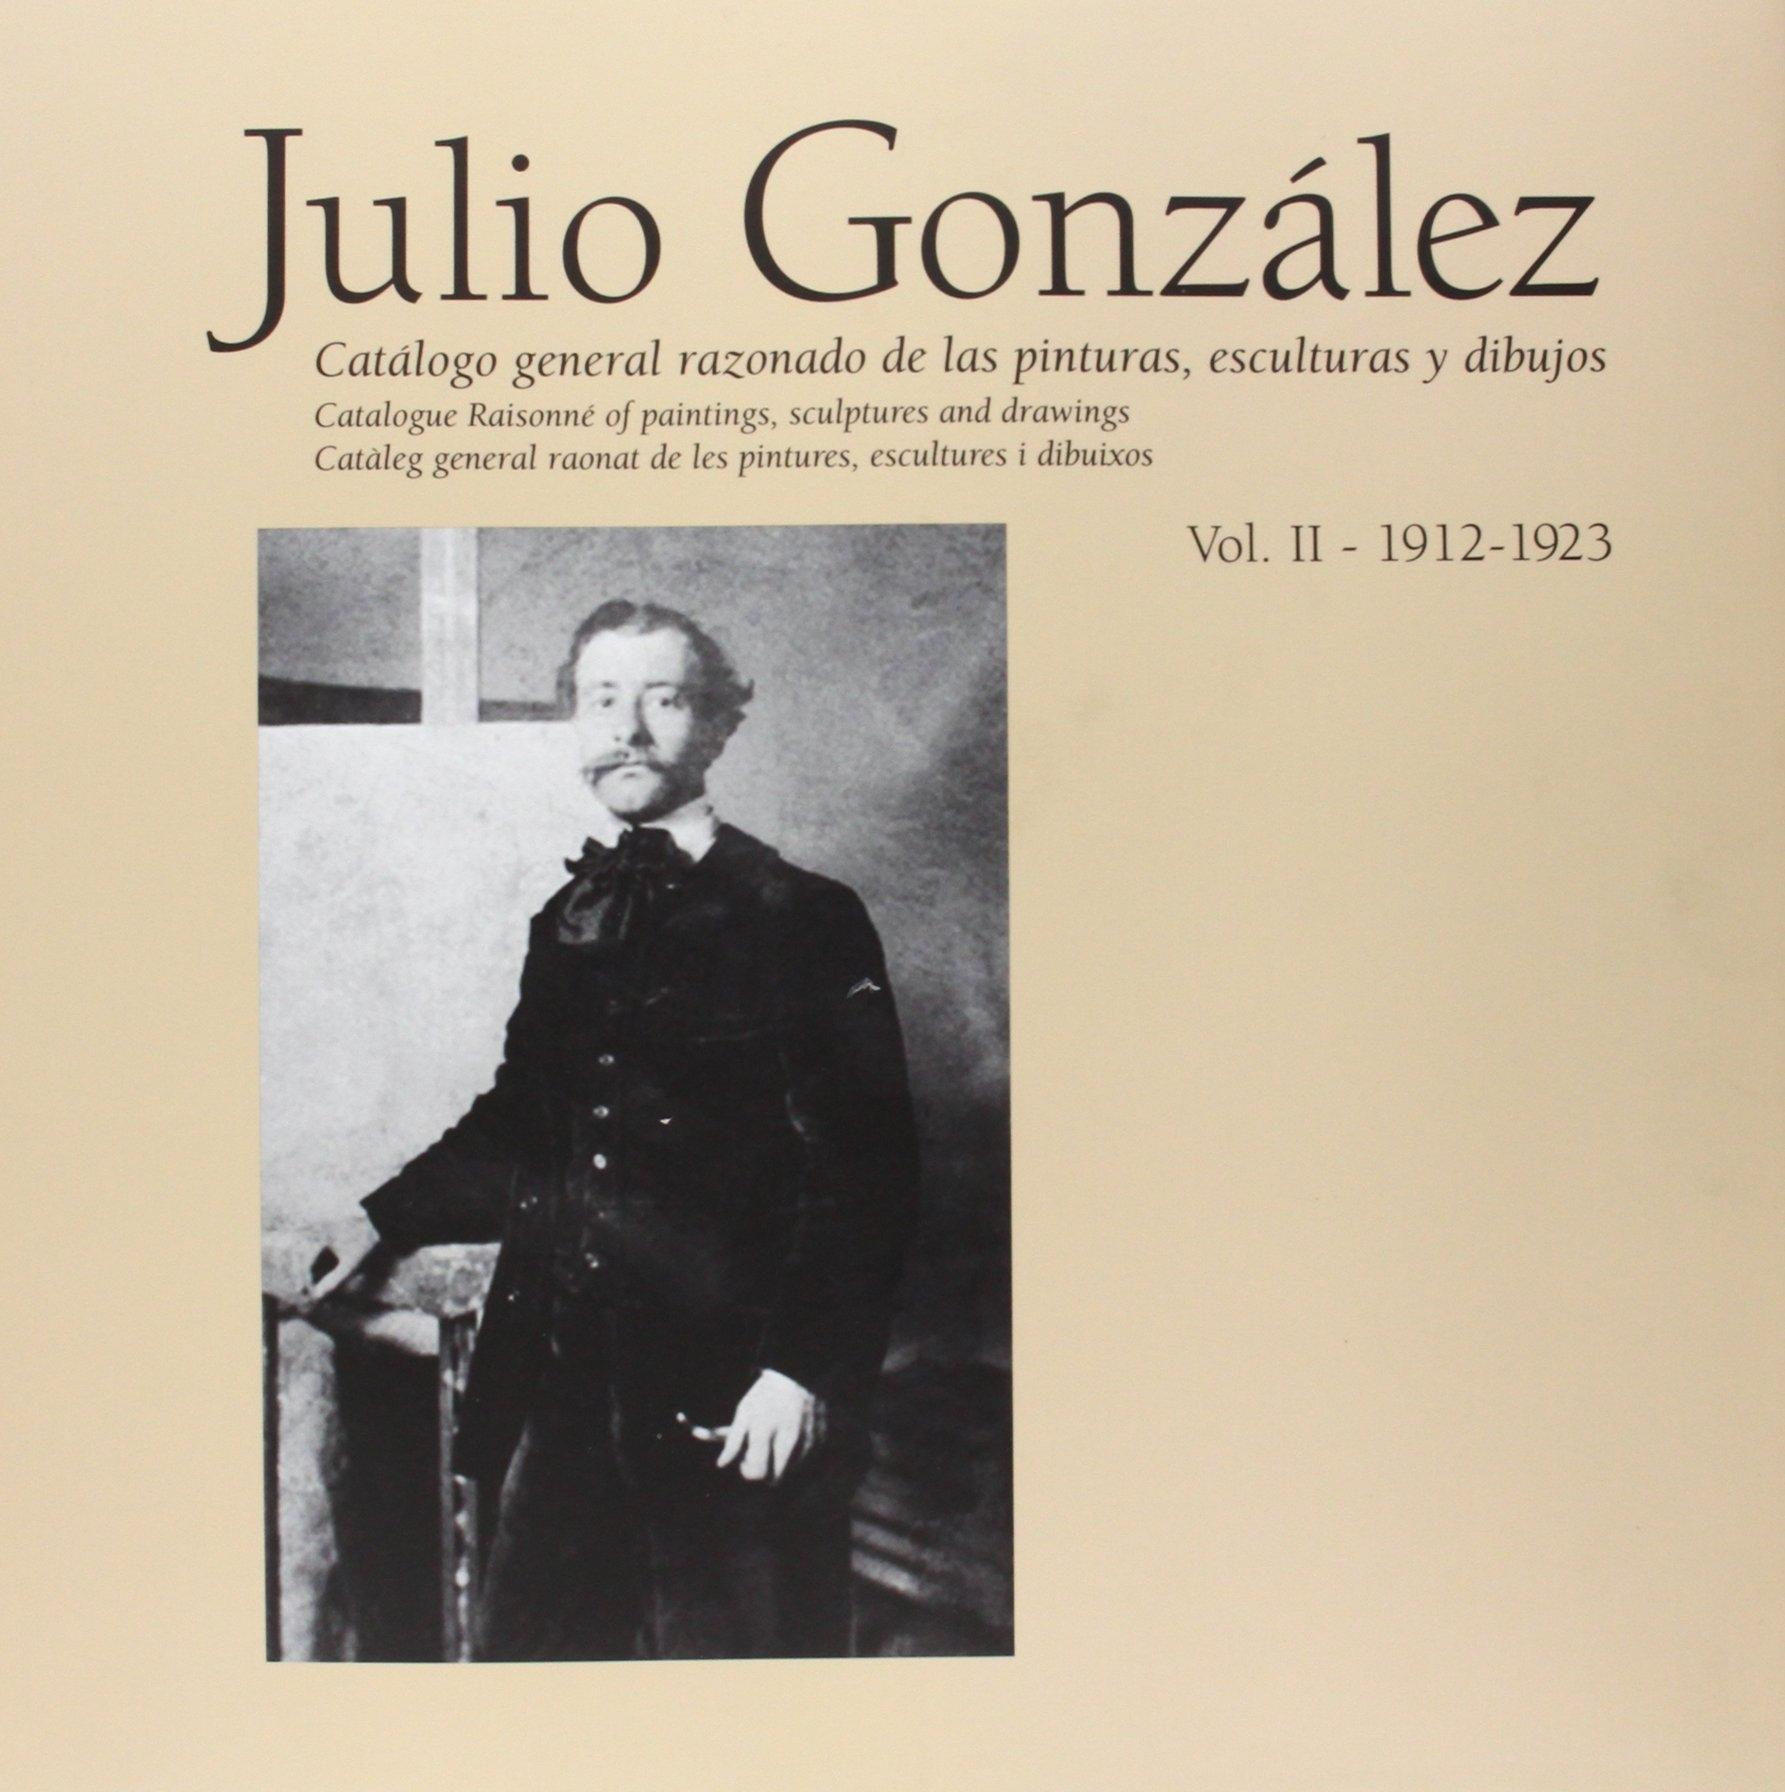 JULIO GONZALEZ  VOL II 1912 - 1923   "CATÁLOGO RAZONADO DE LAS PINTURAS, ESCULTURAS Y DIBUJOS"